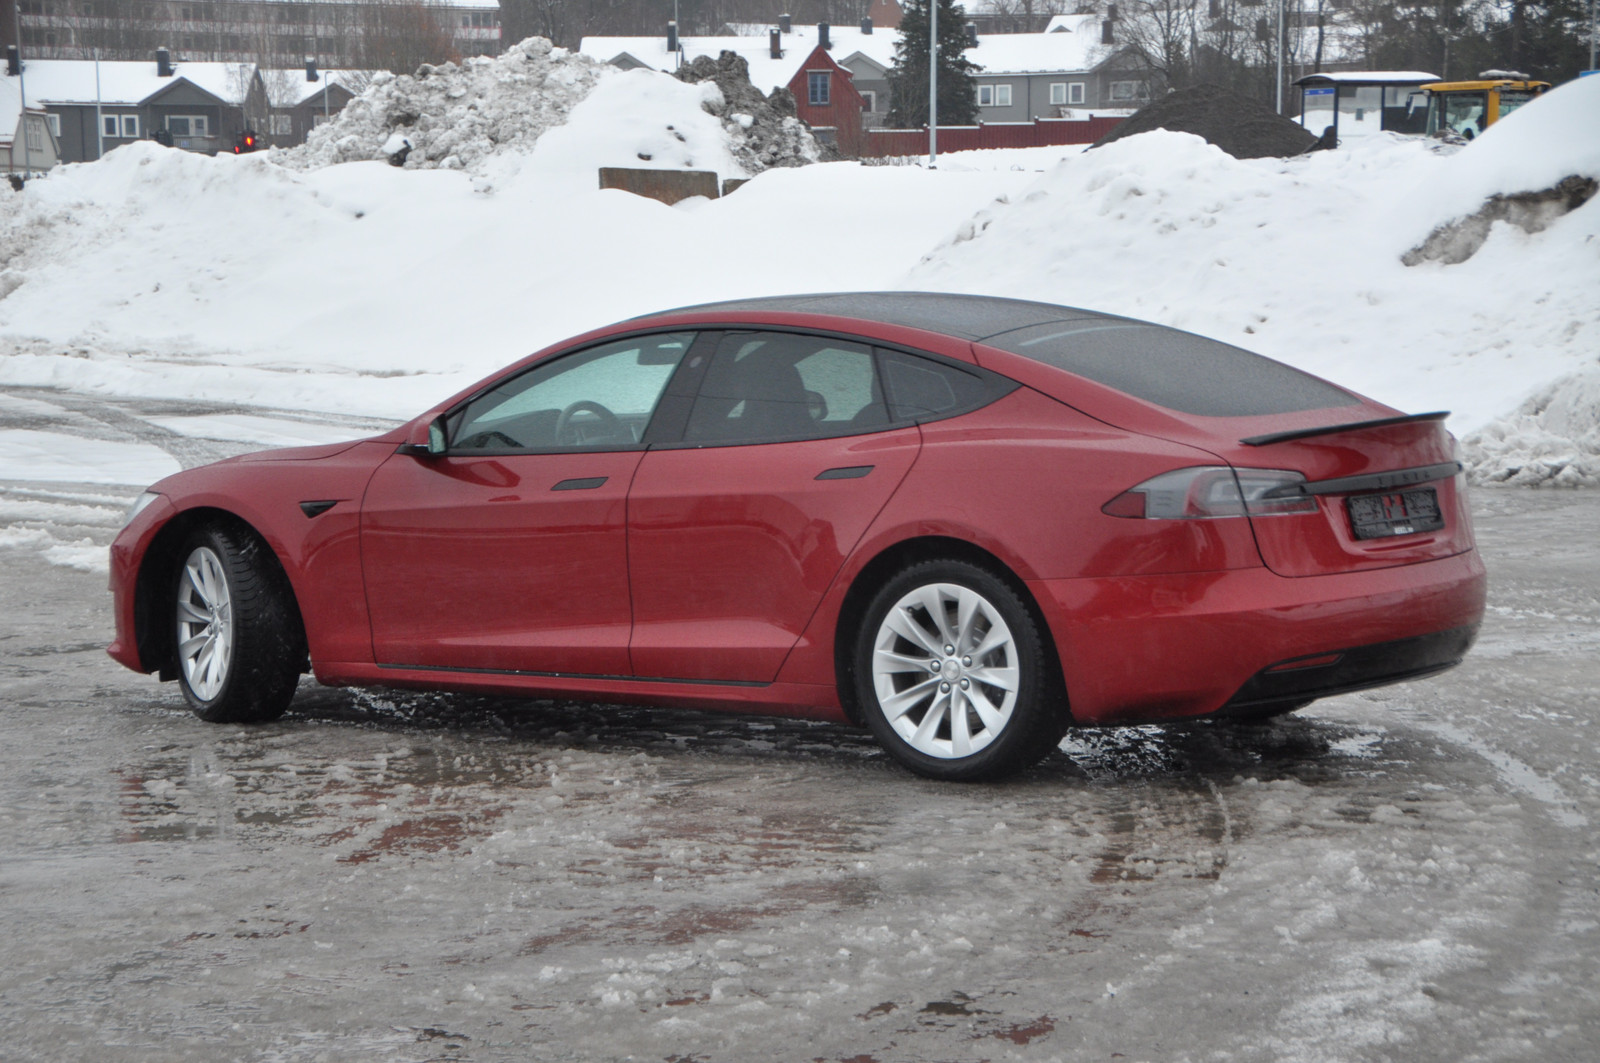 Bilde 6 av Tesla Model S